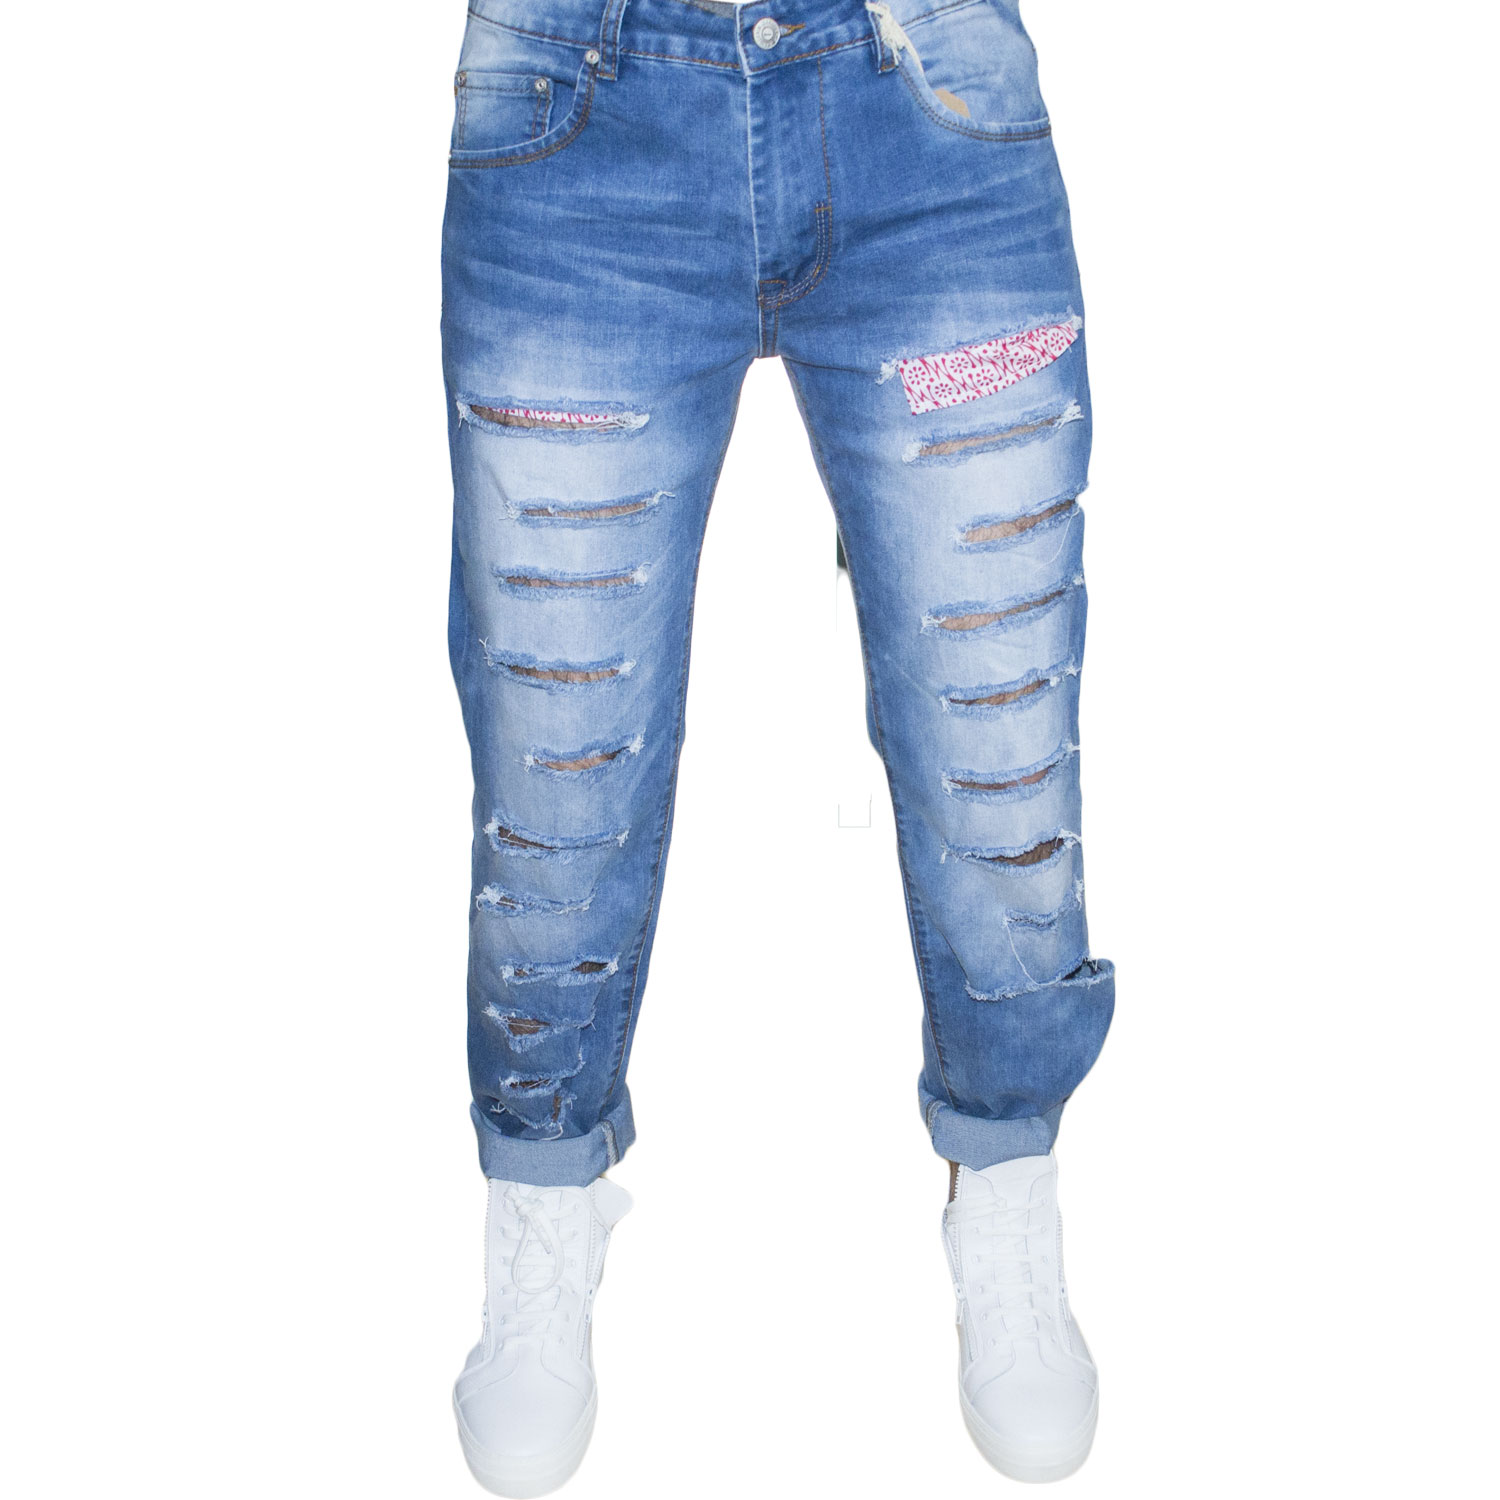 jeans uomo man blu jeans stracciato moda made in italy